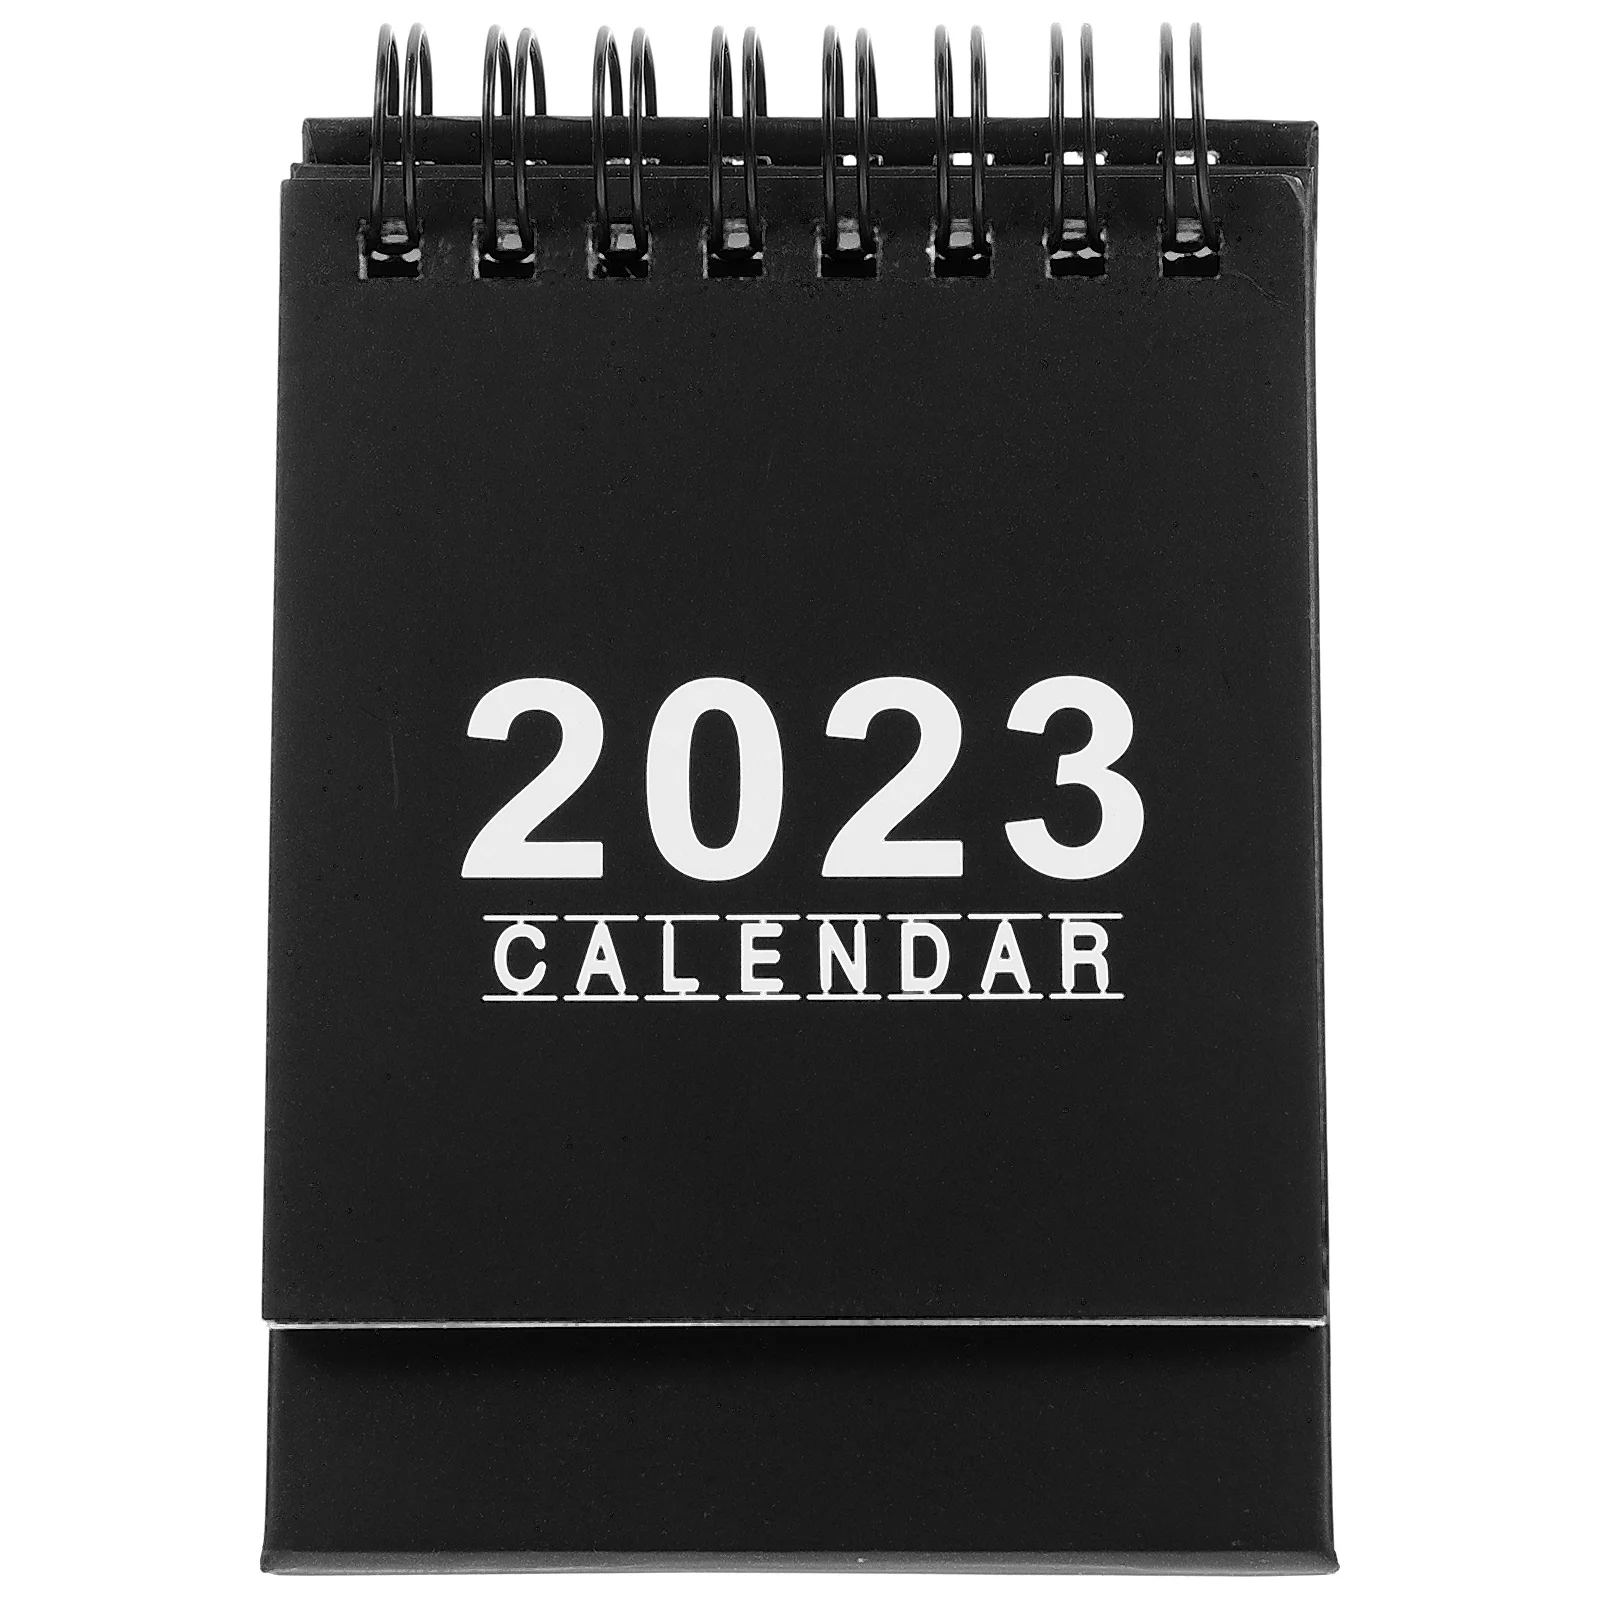 Календарь, рабочий стол, планшетофон, ежемесячная подставка, офисный стол 2023, ежедневный календарь, календарь, кролик